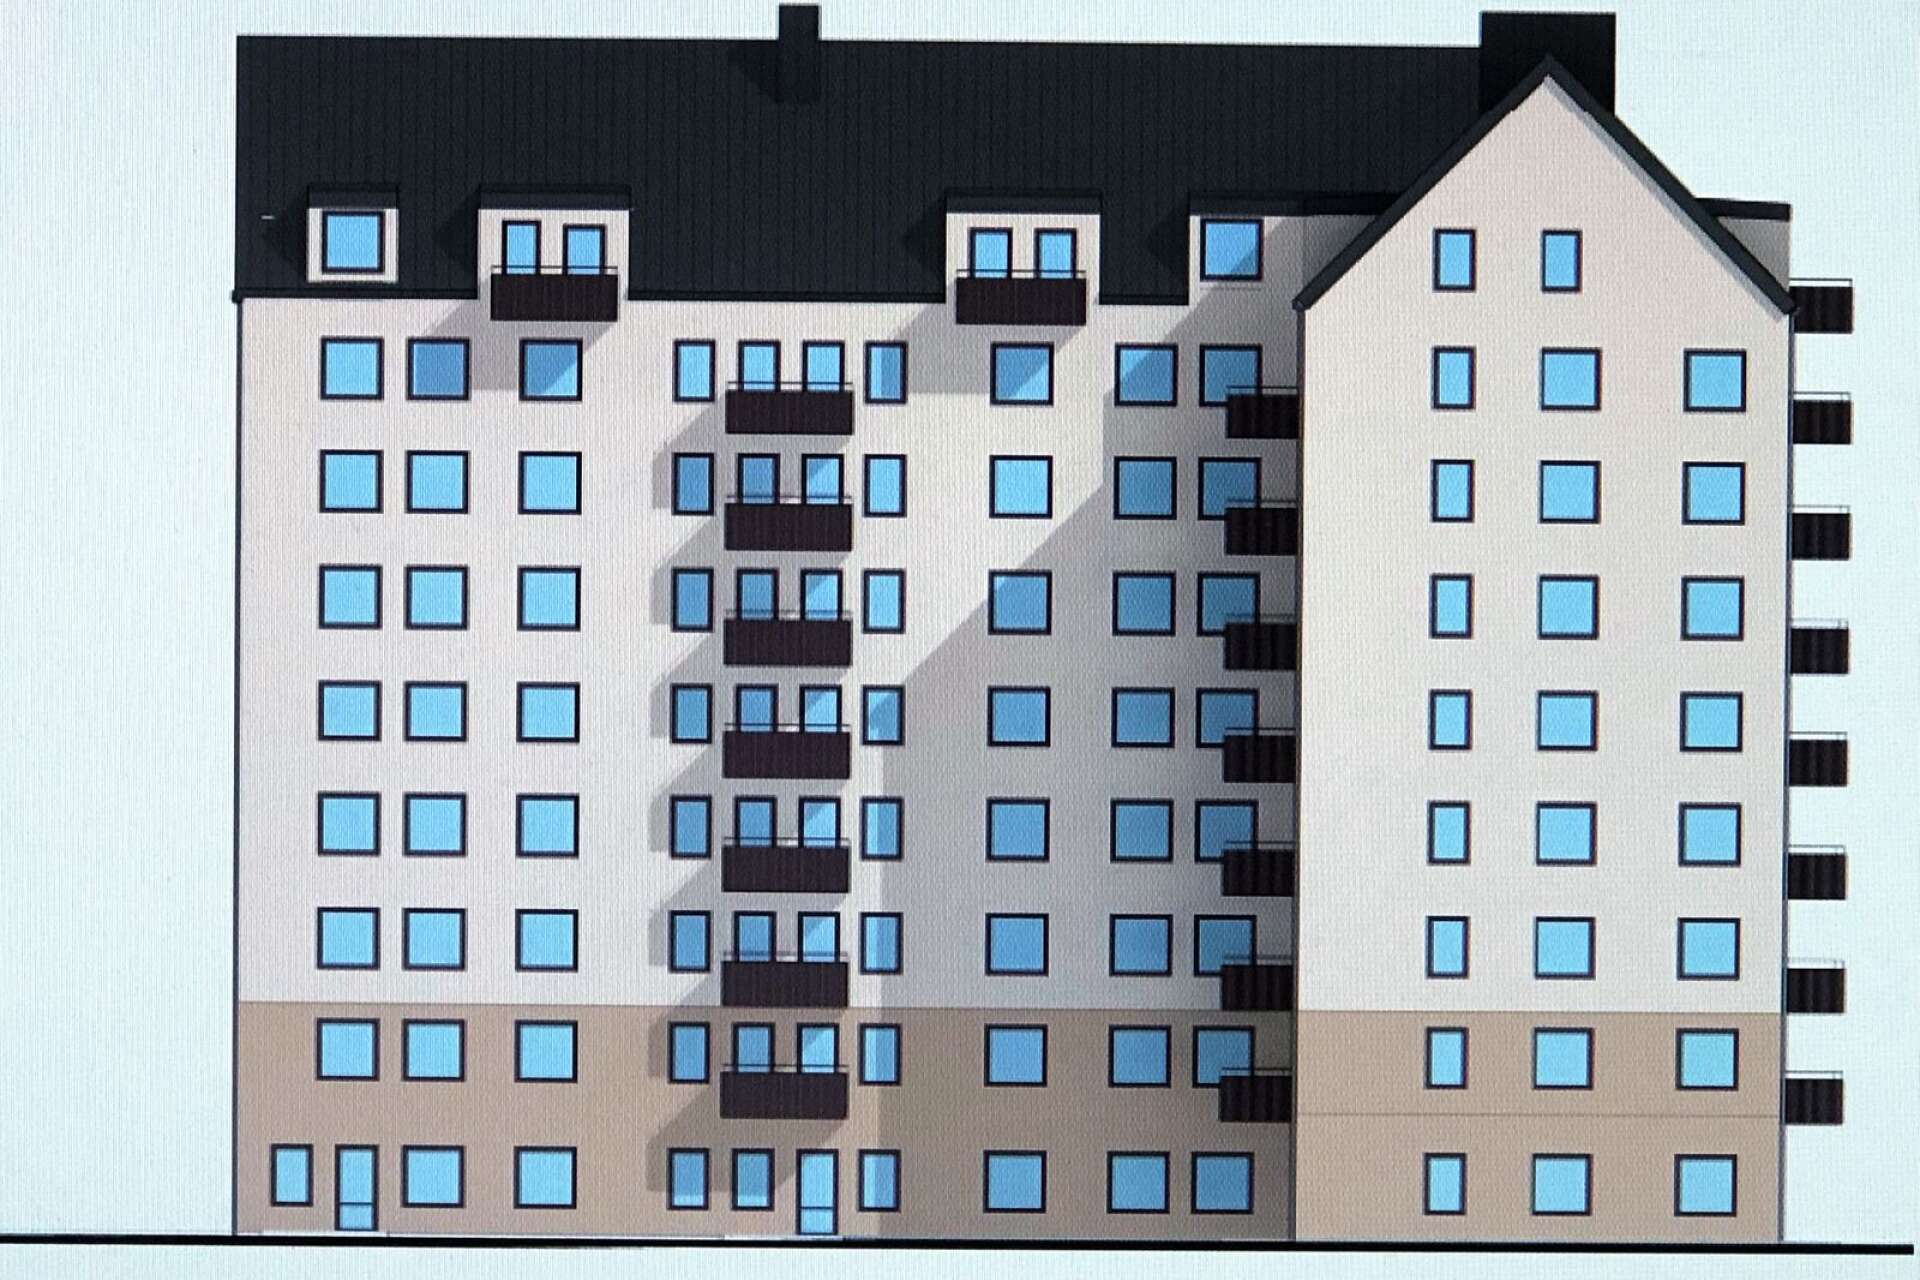 76 hyresrätter blir det i Peabs nya åttavåningshus på Tullholmen. Projektet fick bygglov på onsdagen av stadsbyggnadsnämnden.